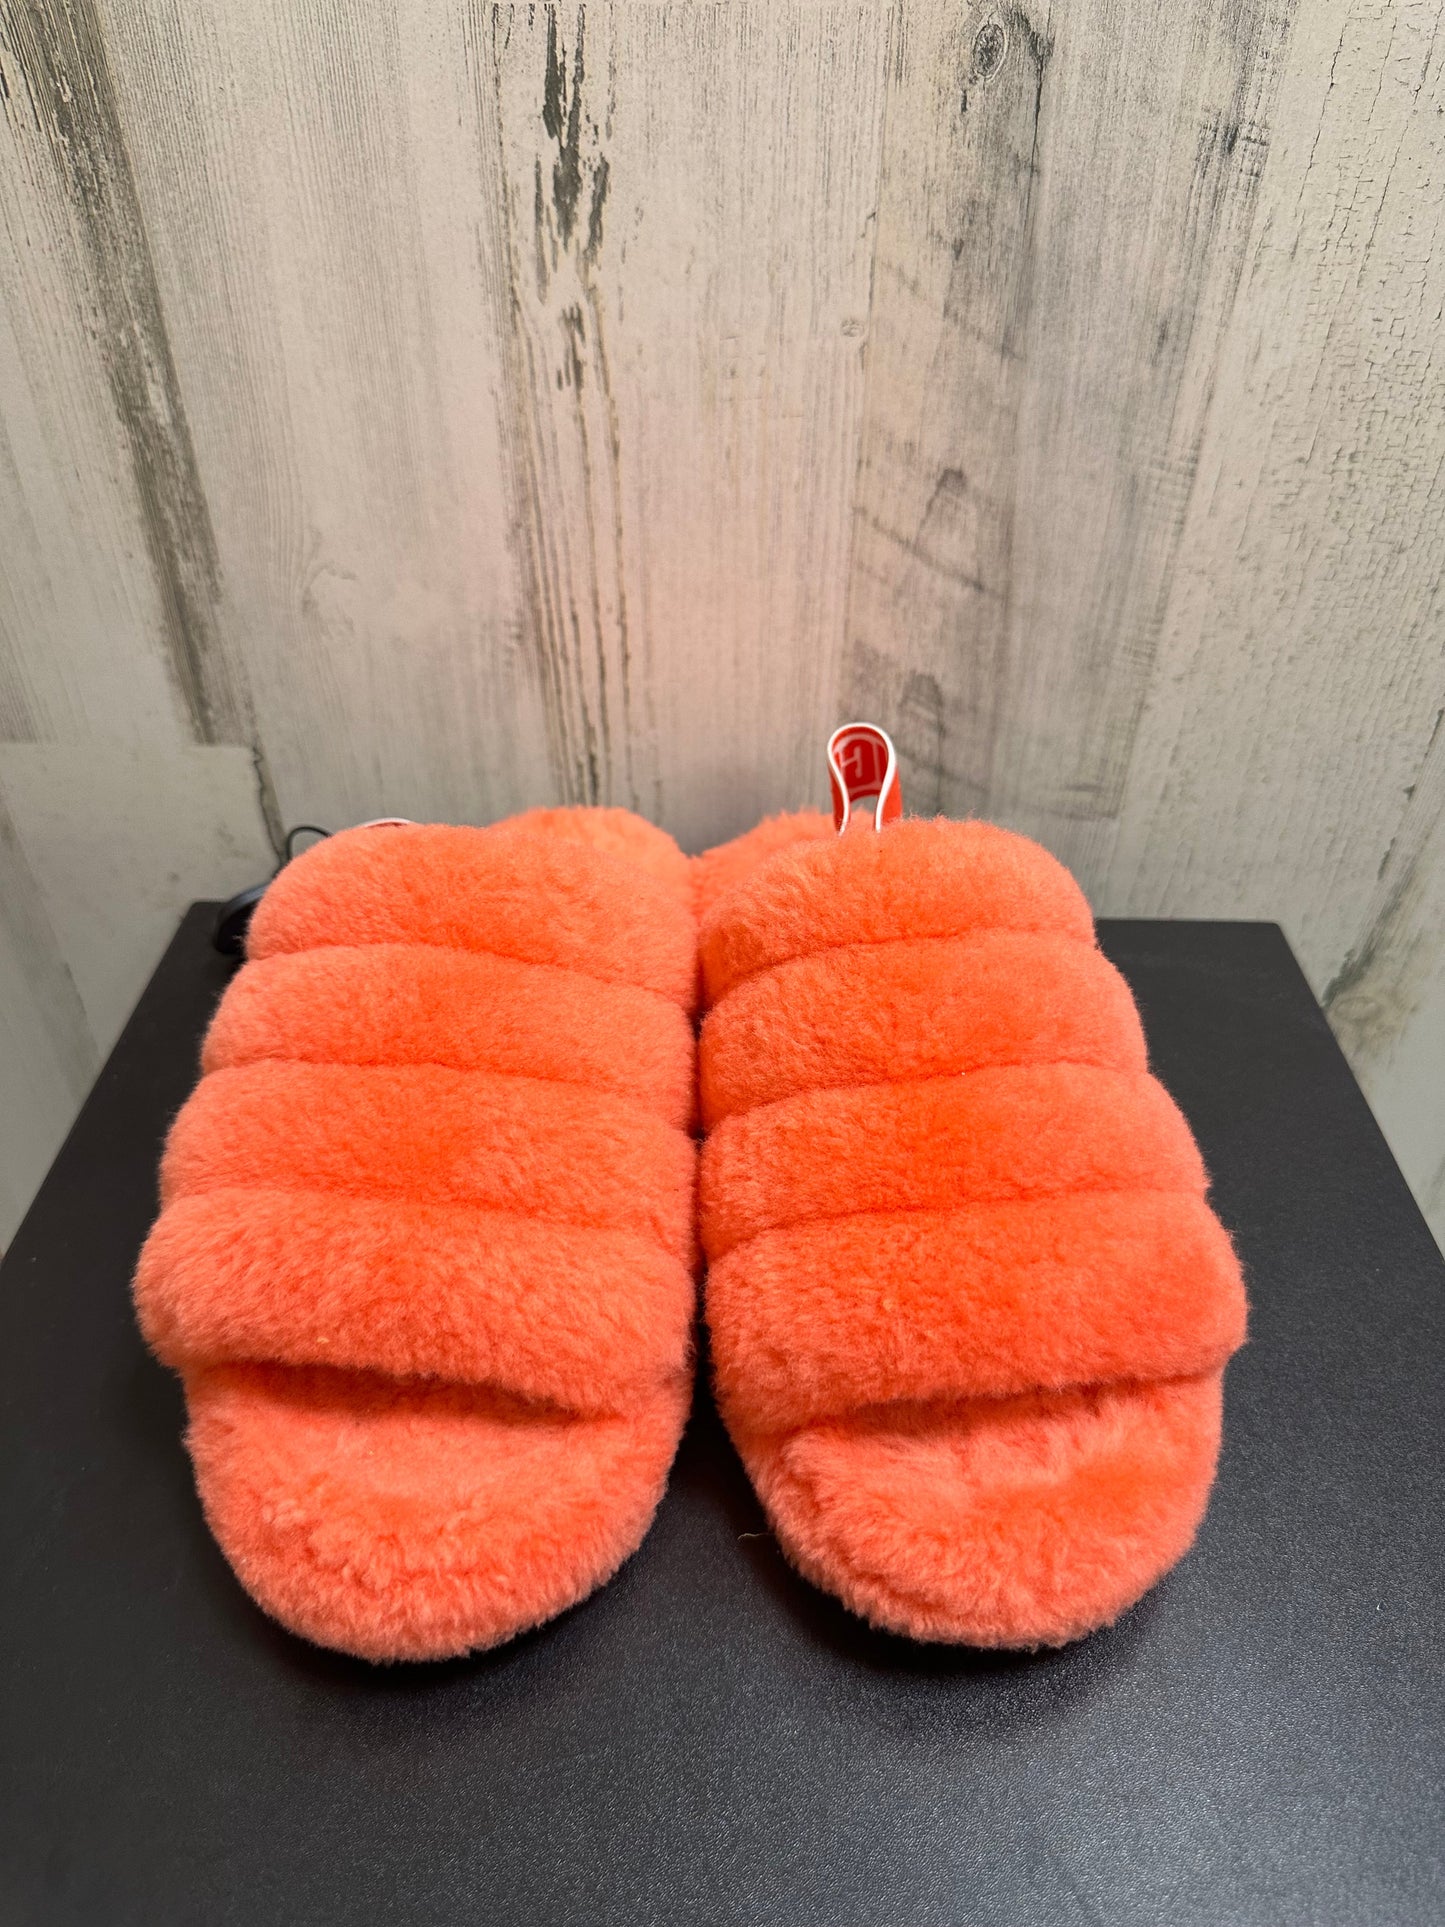 Orange Sandals Flats Ugg, Size 7